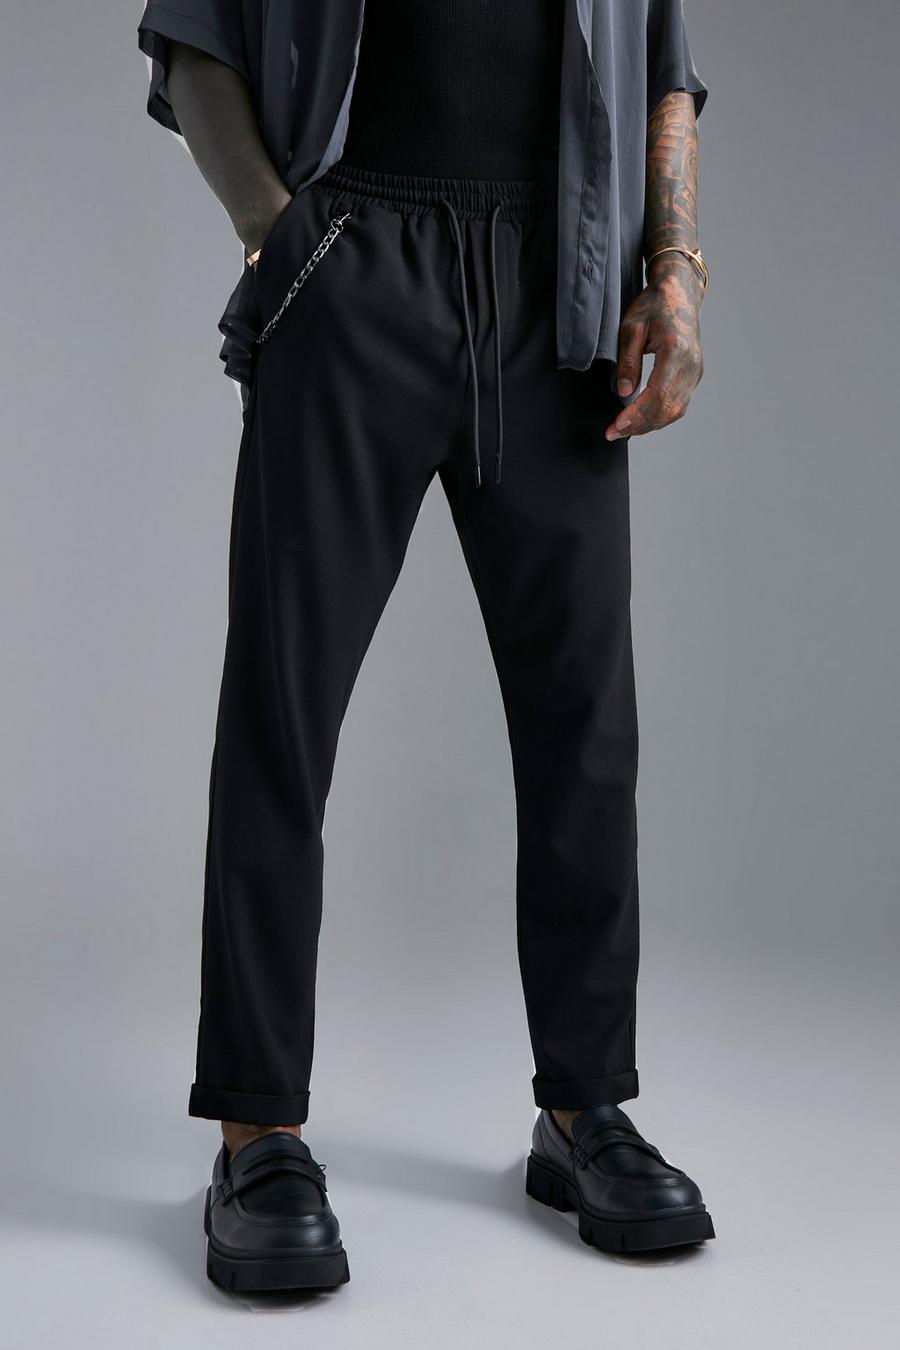 שחור black מכנסיים בגזרת קרסול צרה עם מכפלת מקופלת ועיטור שרשרת